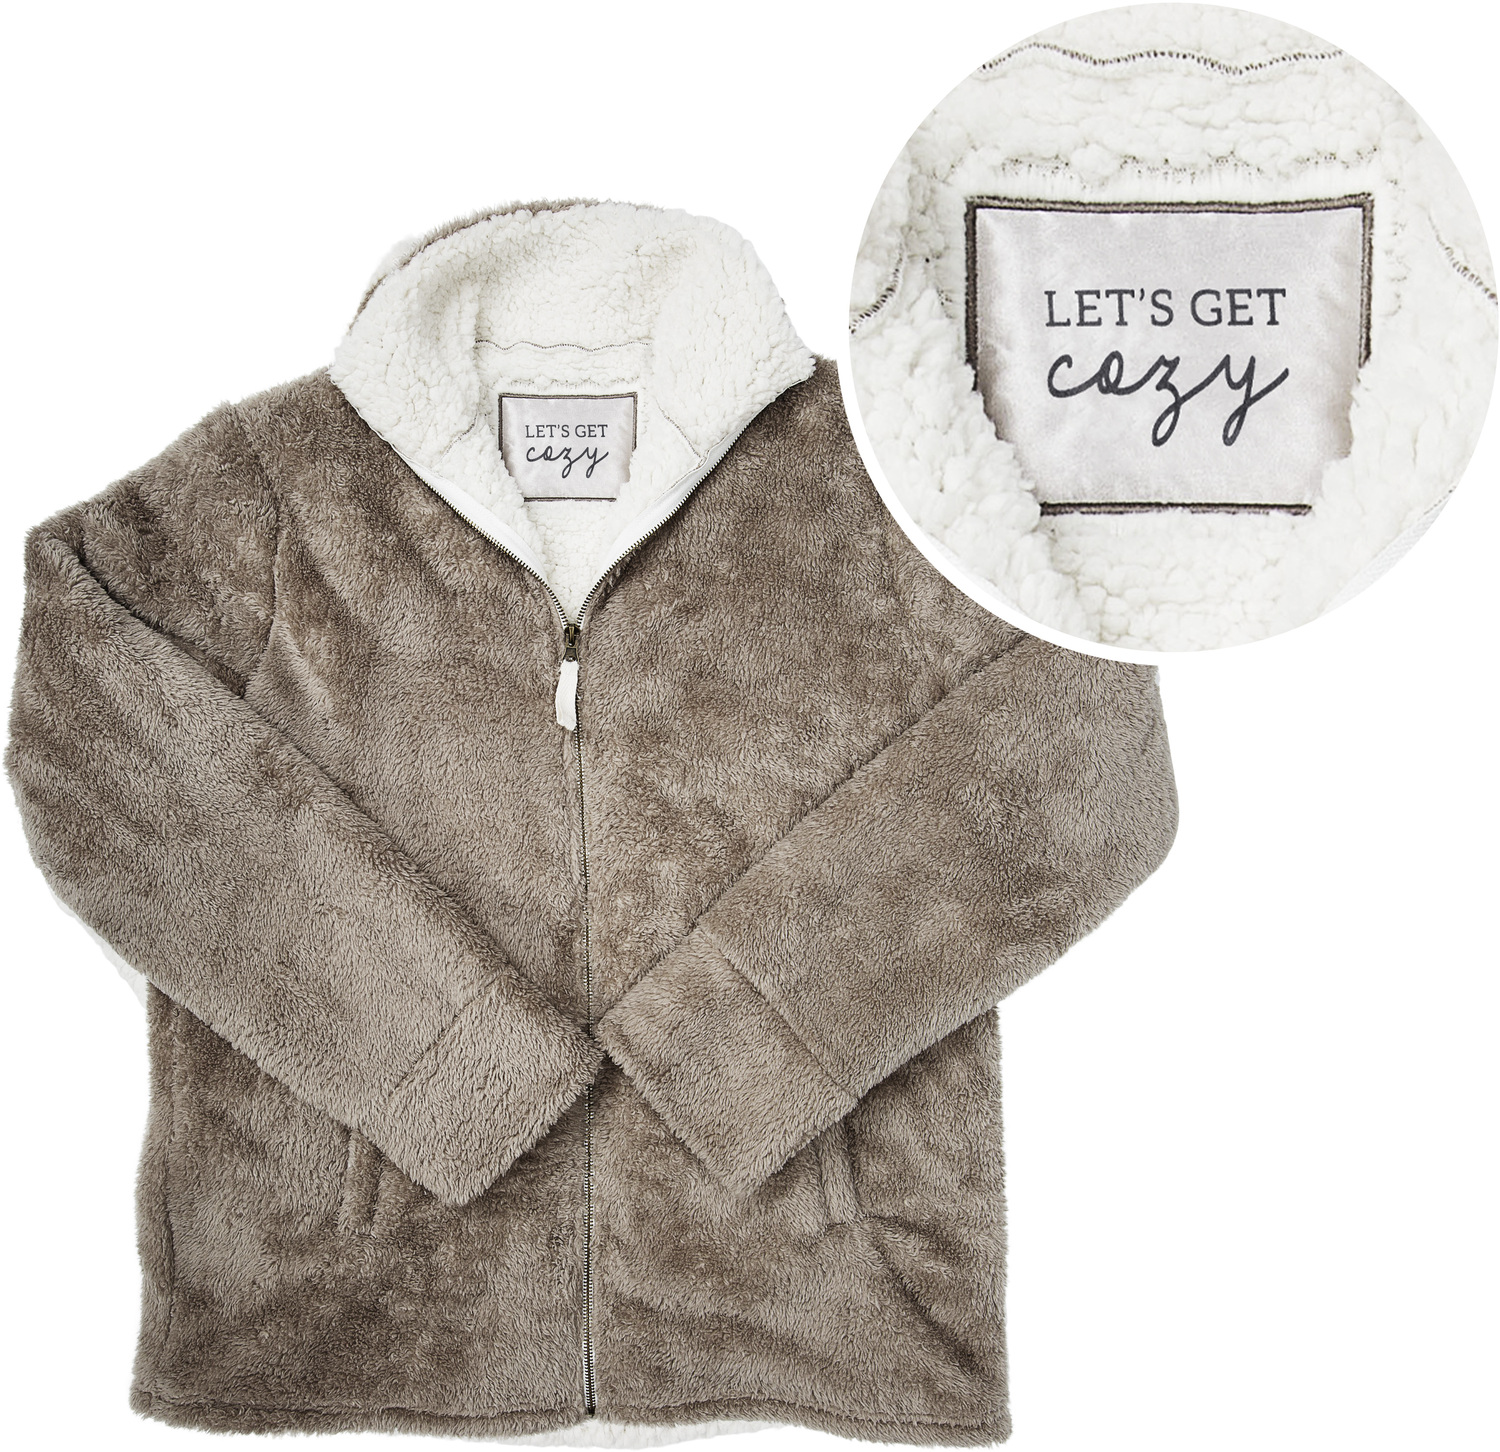 Cozy by Comfort Collection - Cozy - XXL Unisex Fleece Full Zip Sweatshirt